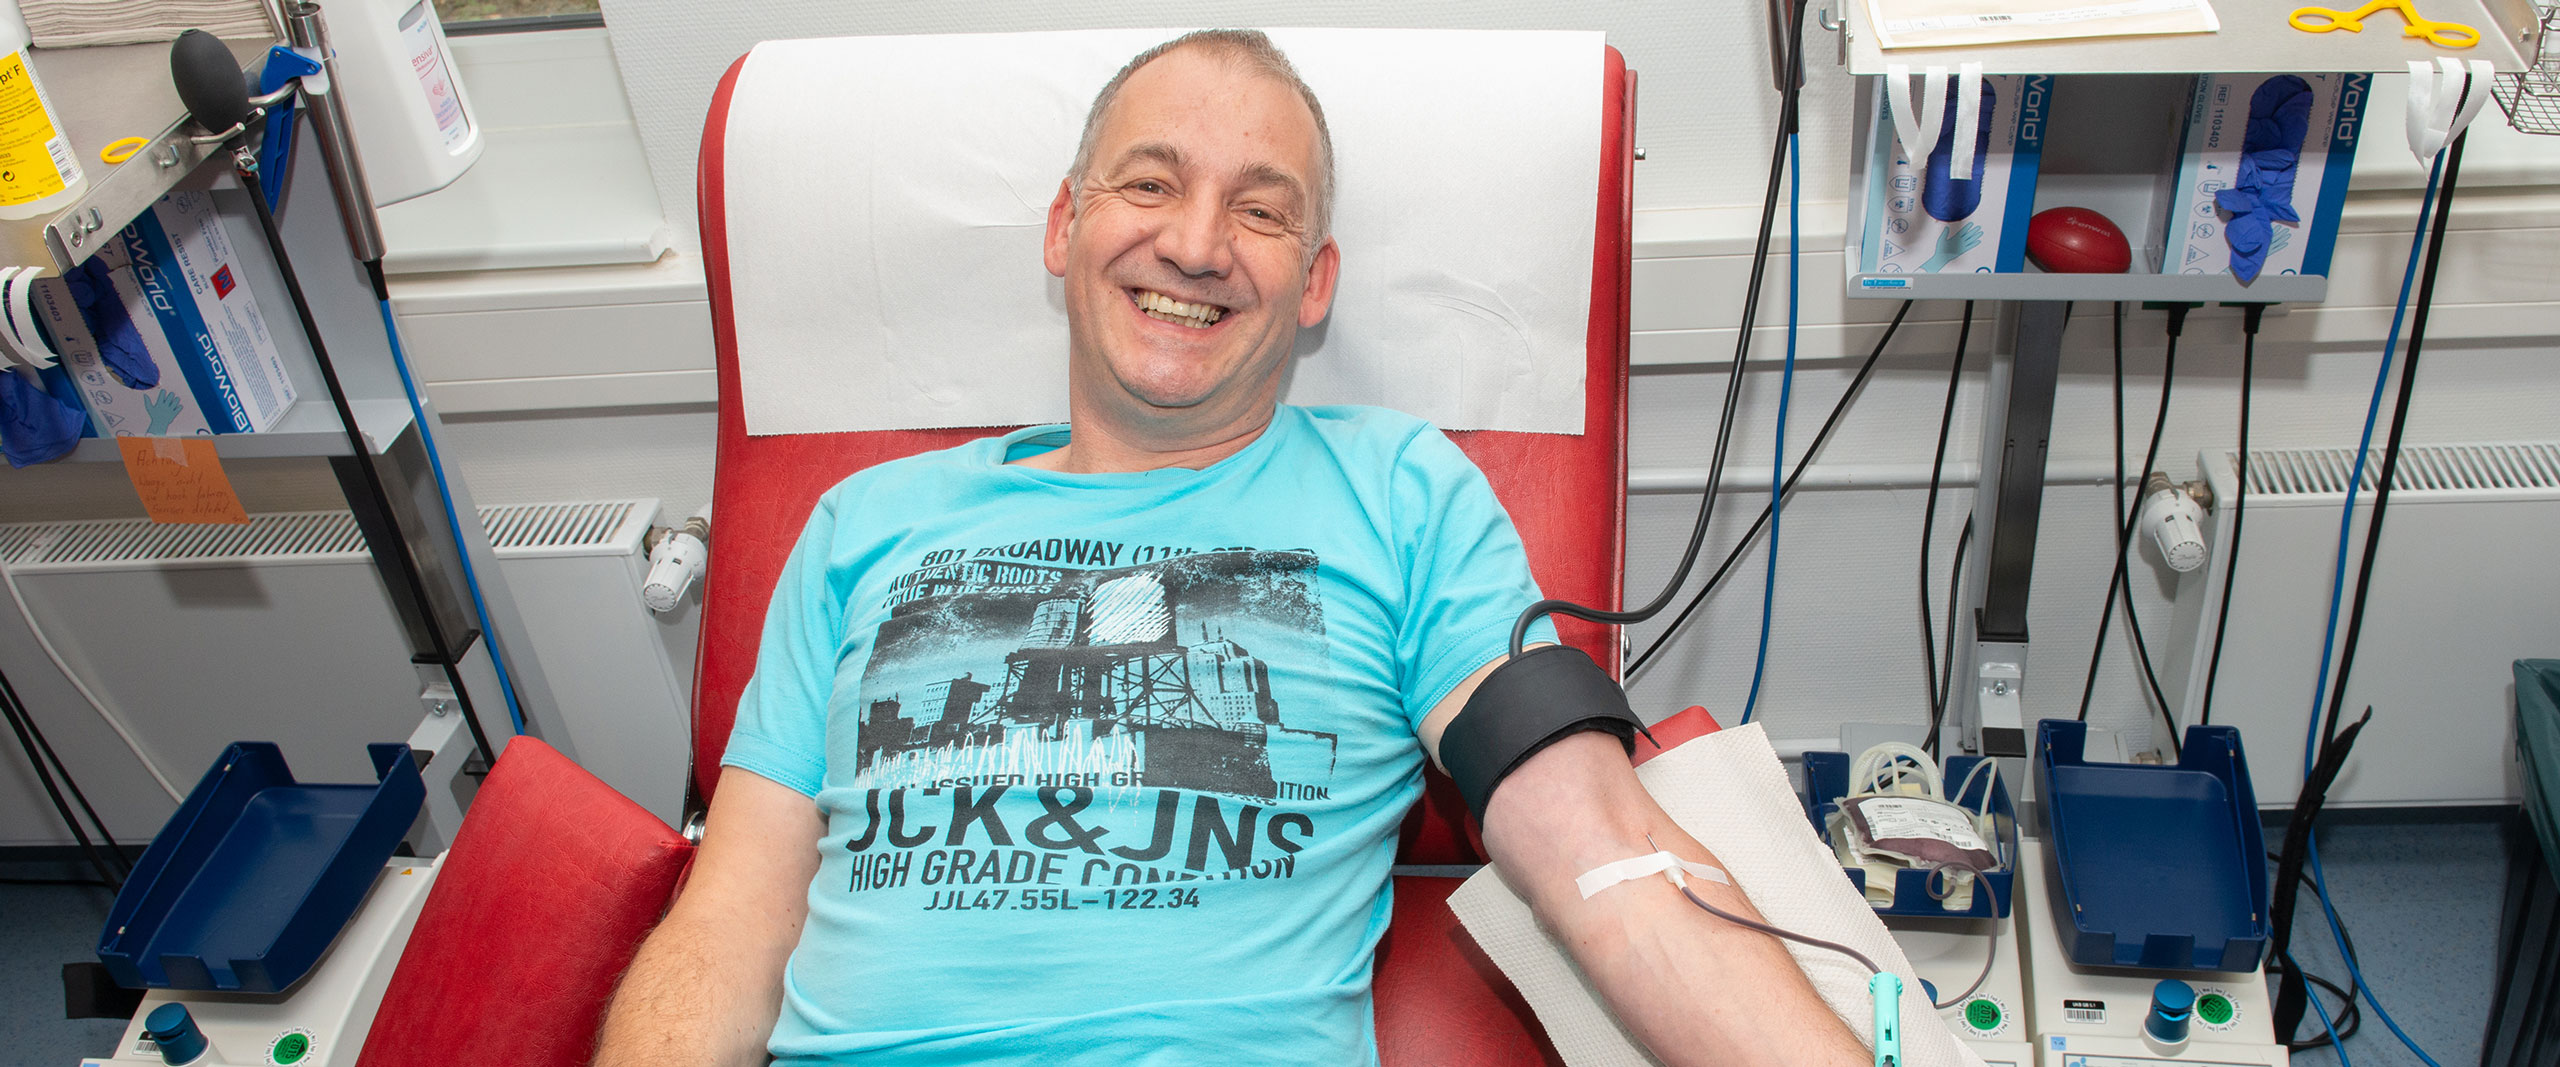 Mann beim Blutspenden